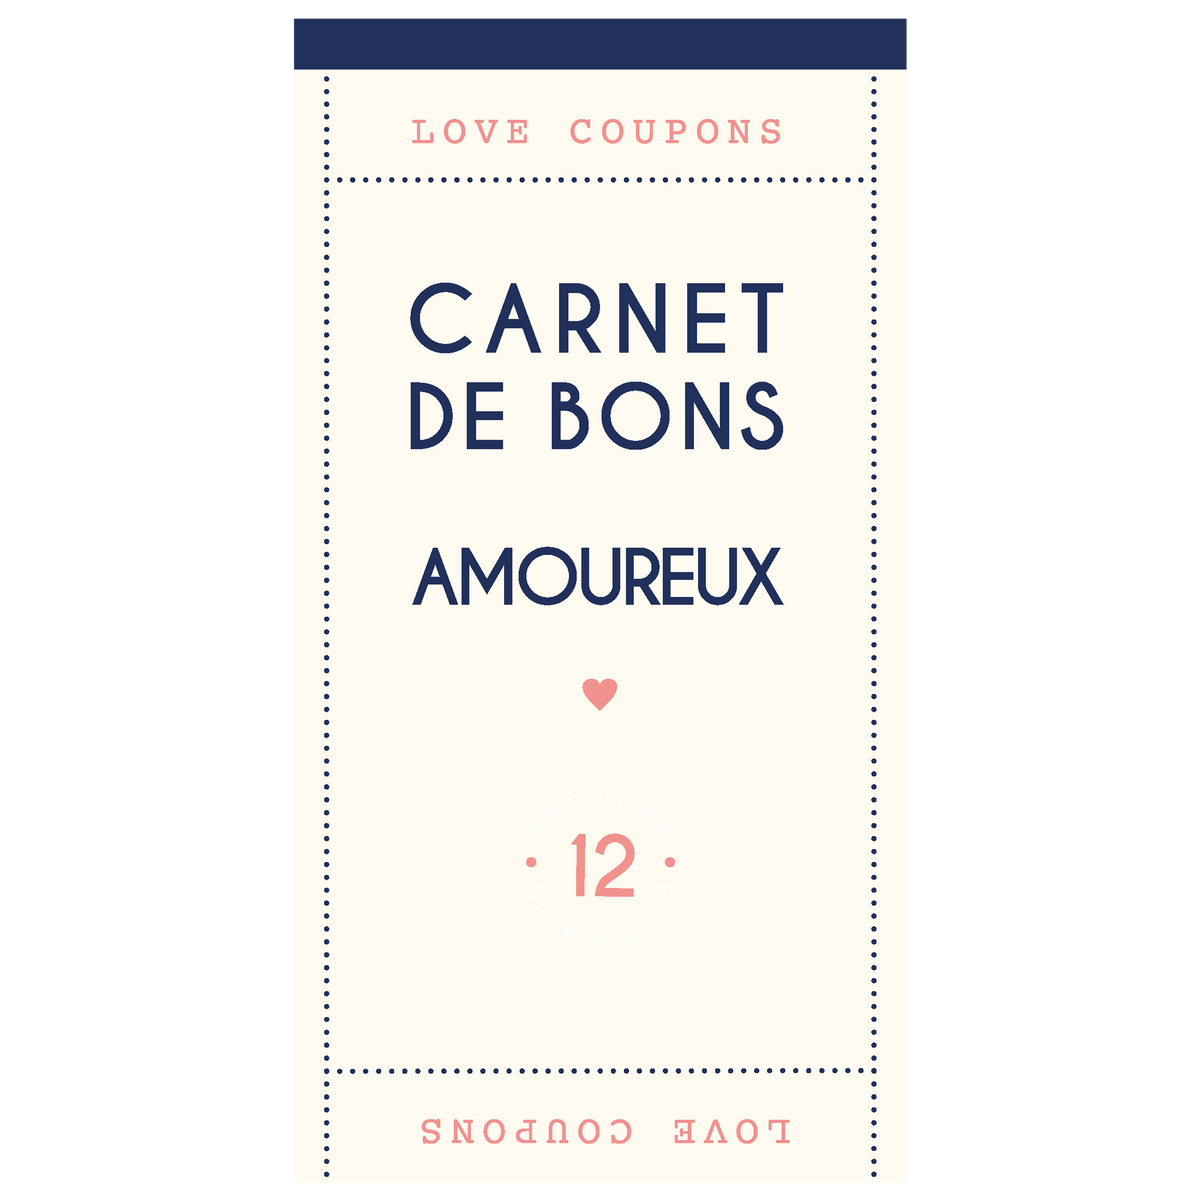 Carnet de bons pour les amoureux - 12 chèques – Draeger Paris